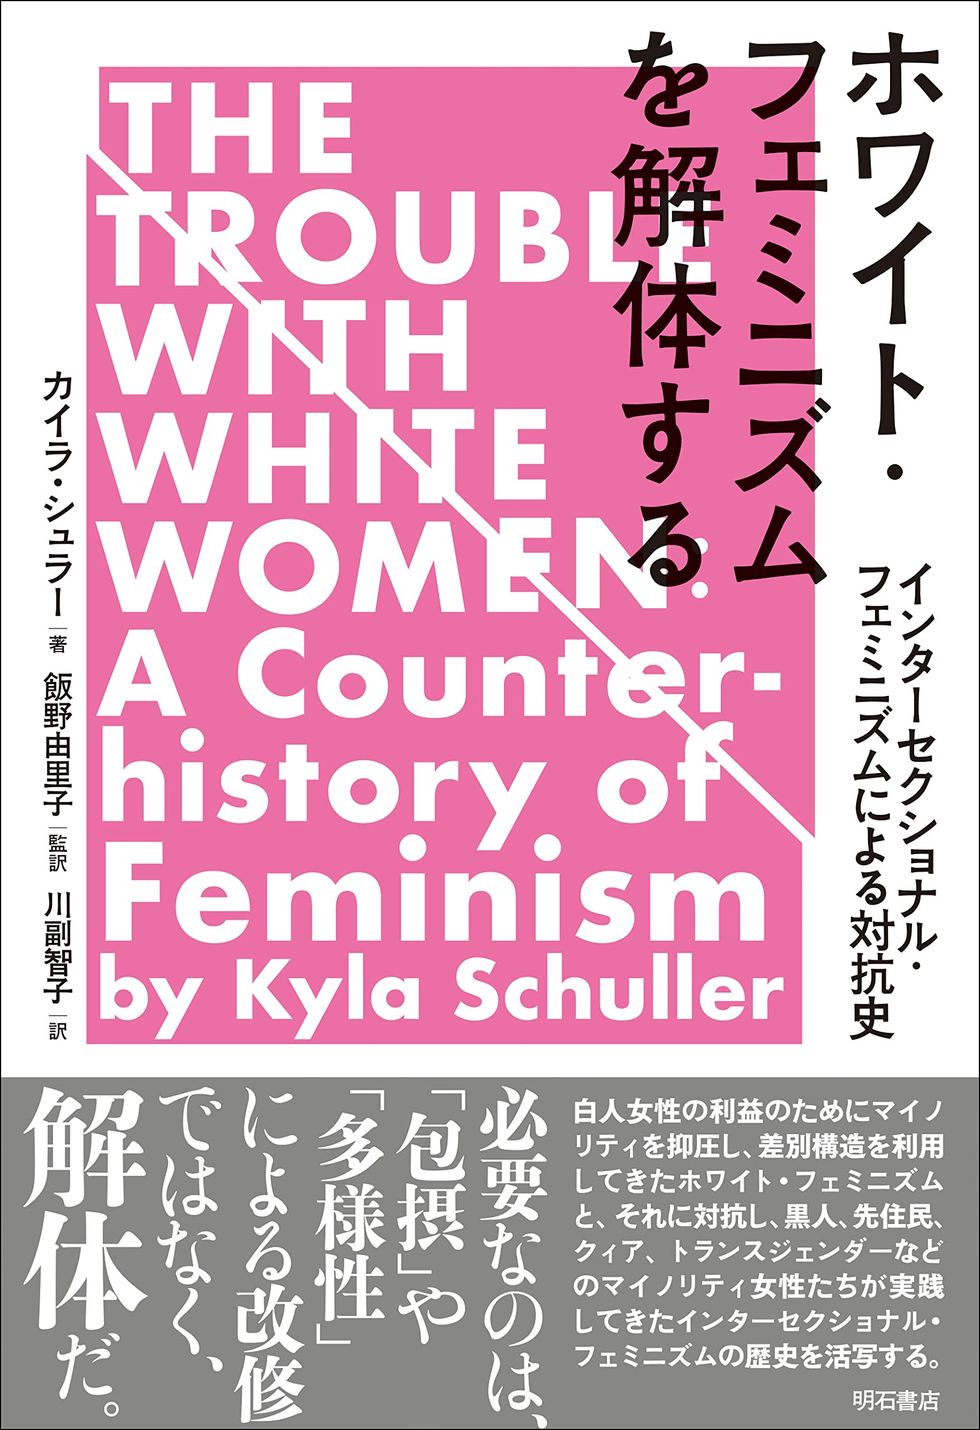 ホワイト・フェミニズムを解体する――インターセクショナル・フェミニズムによる対抗史